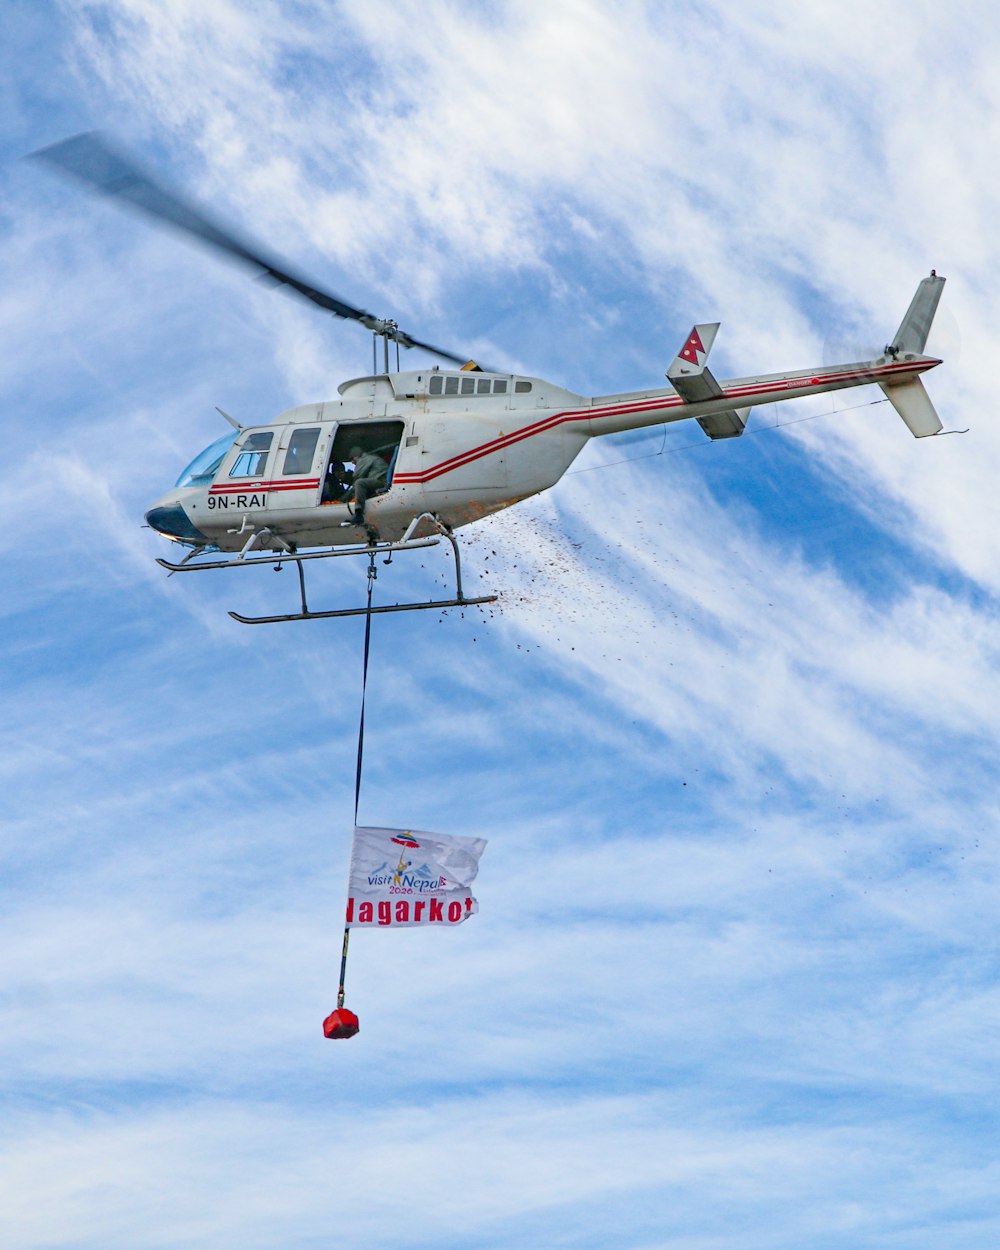 昼間の青空の下を飛ぶ白と赤のヘリコプター